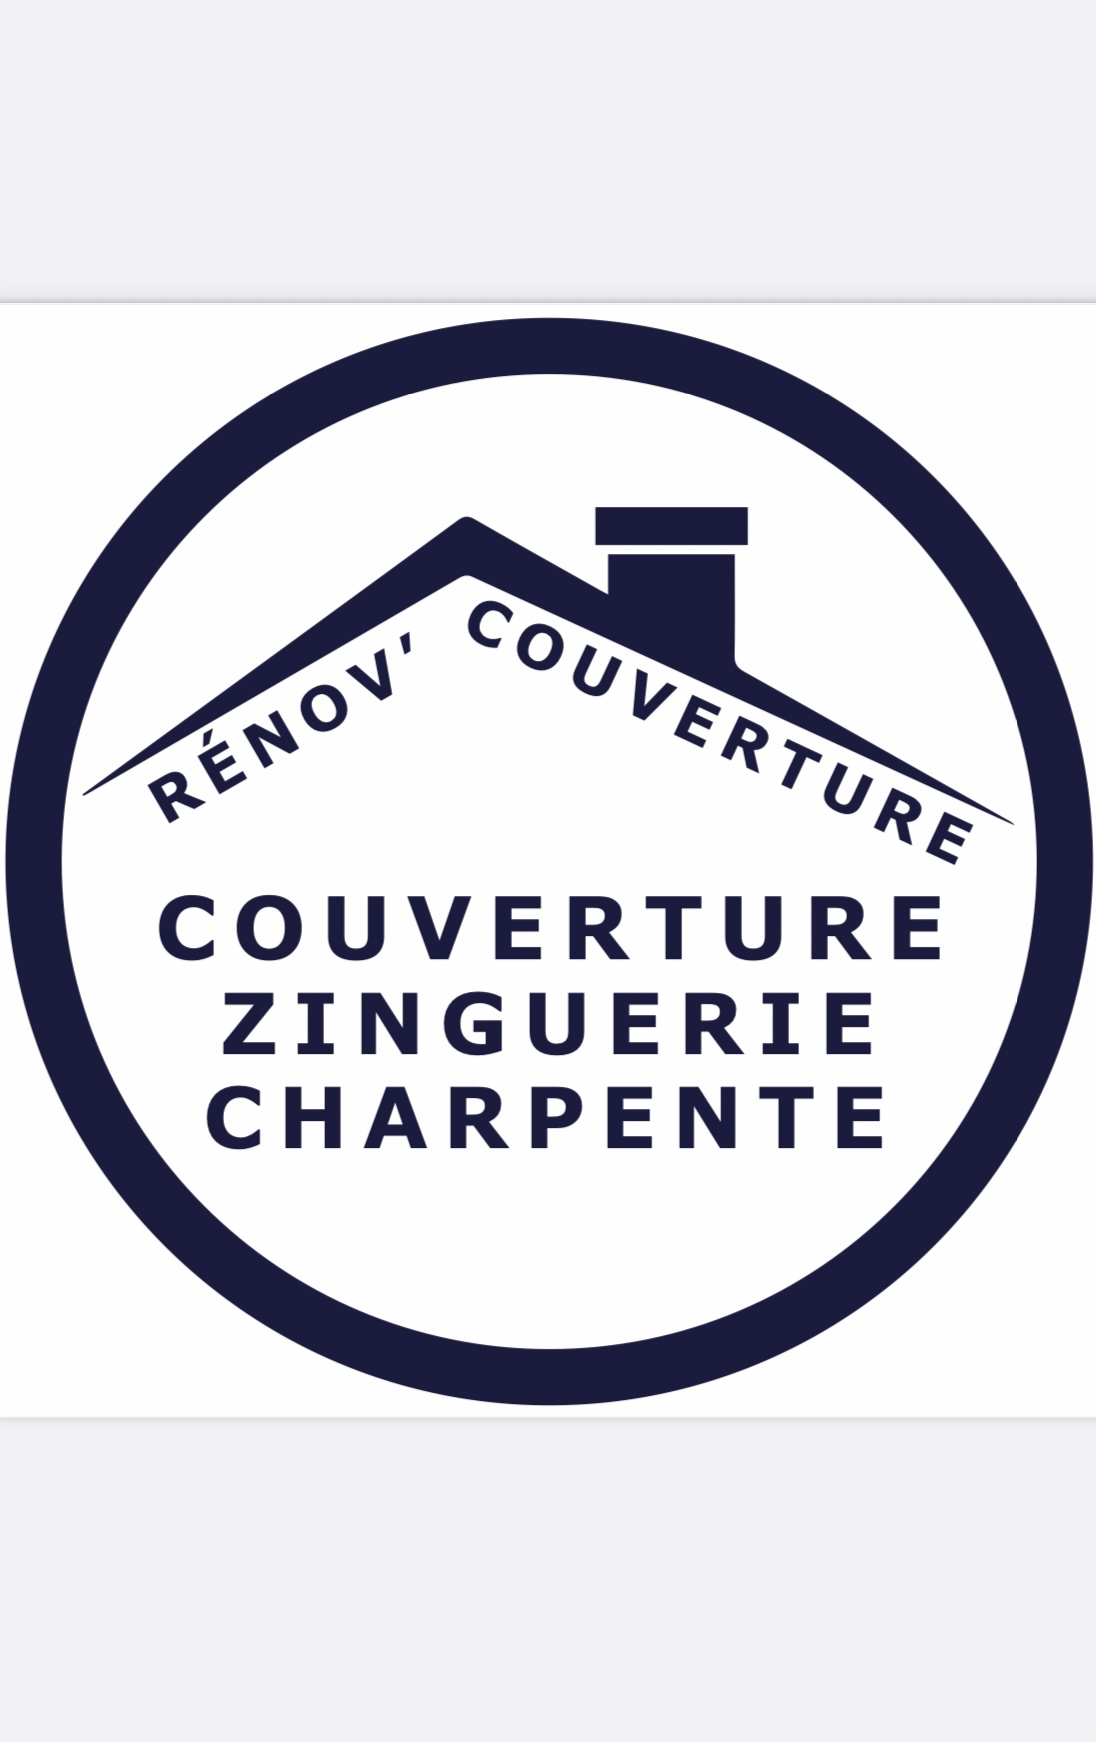 Logo de Renov’couverture, société de travaux en Rénovation ou changement de votre couverture de toit